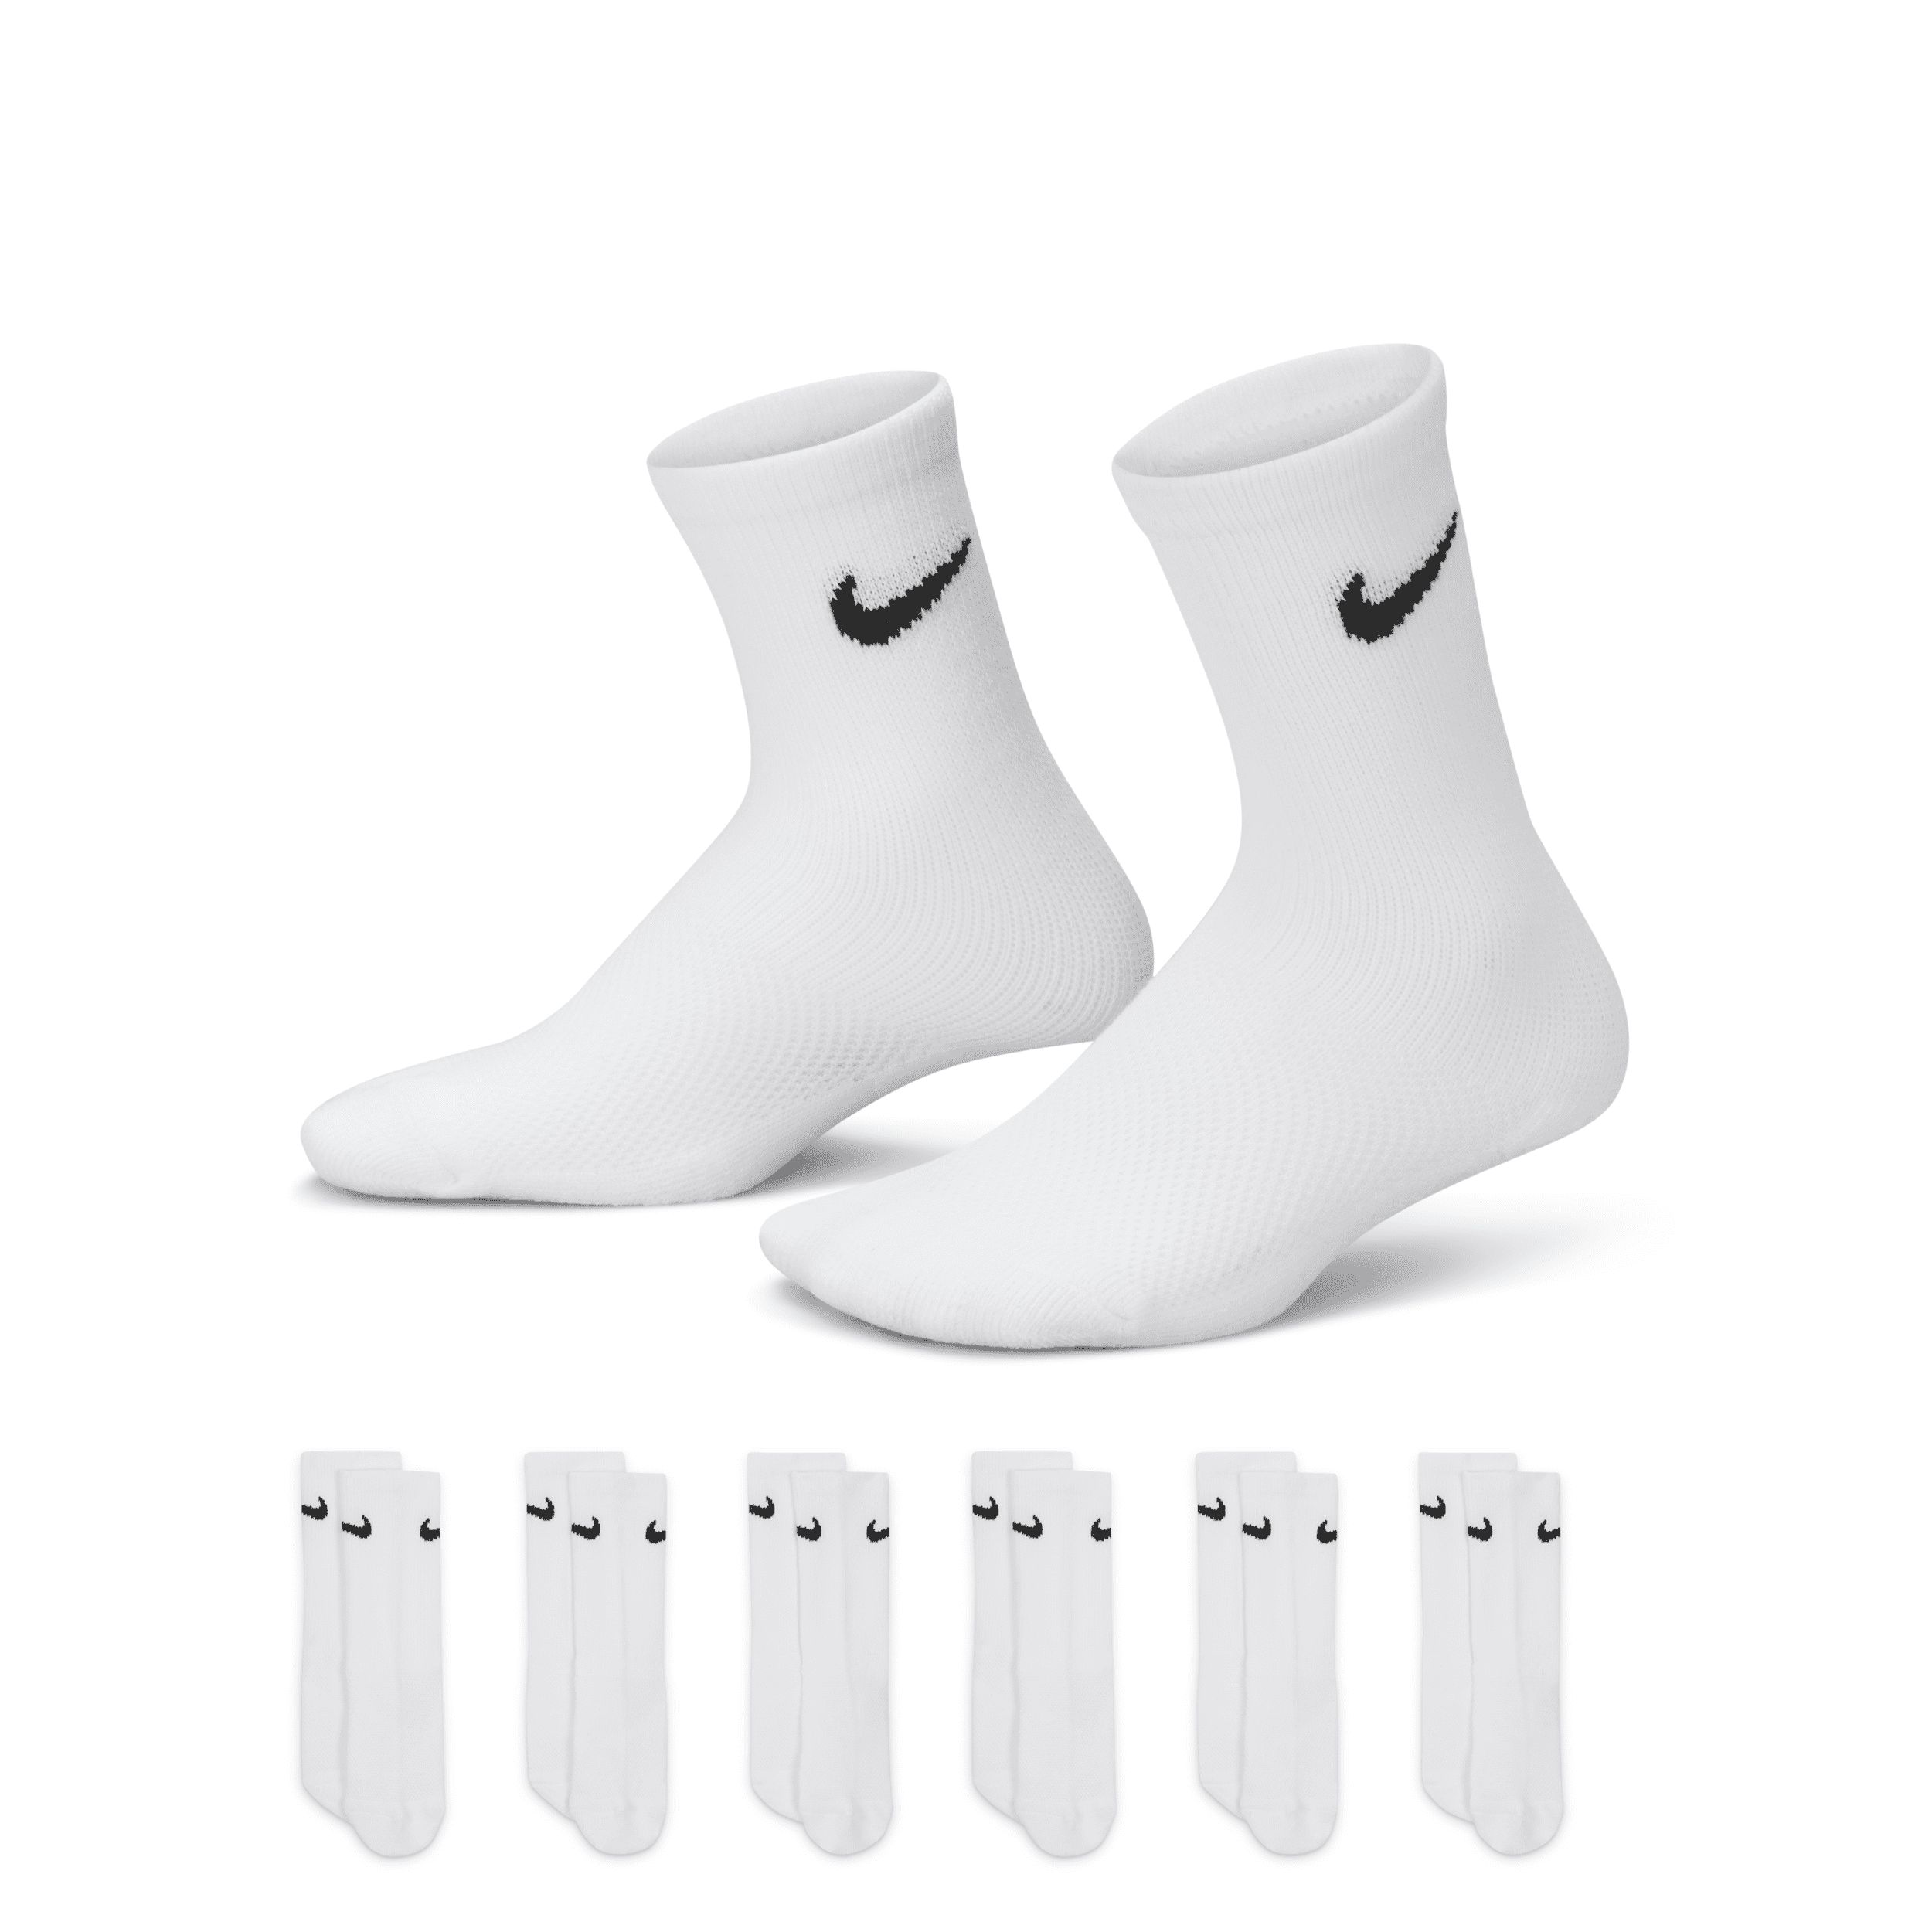 Nike Mesh and Cushioned Crew Socks Box Set (6 Pairs) Little Kids' Socks in White, Size: 7C-10C | RN0 | Nike (US)